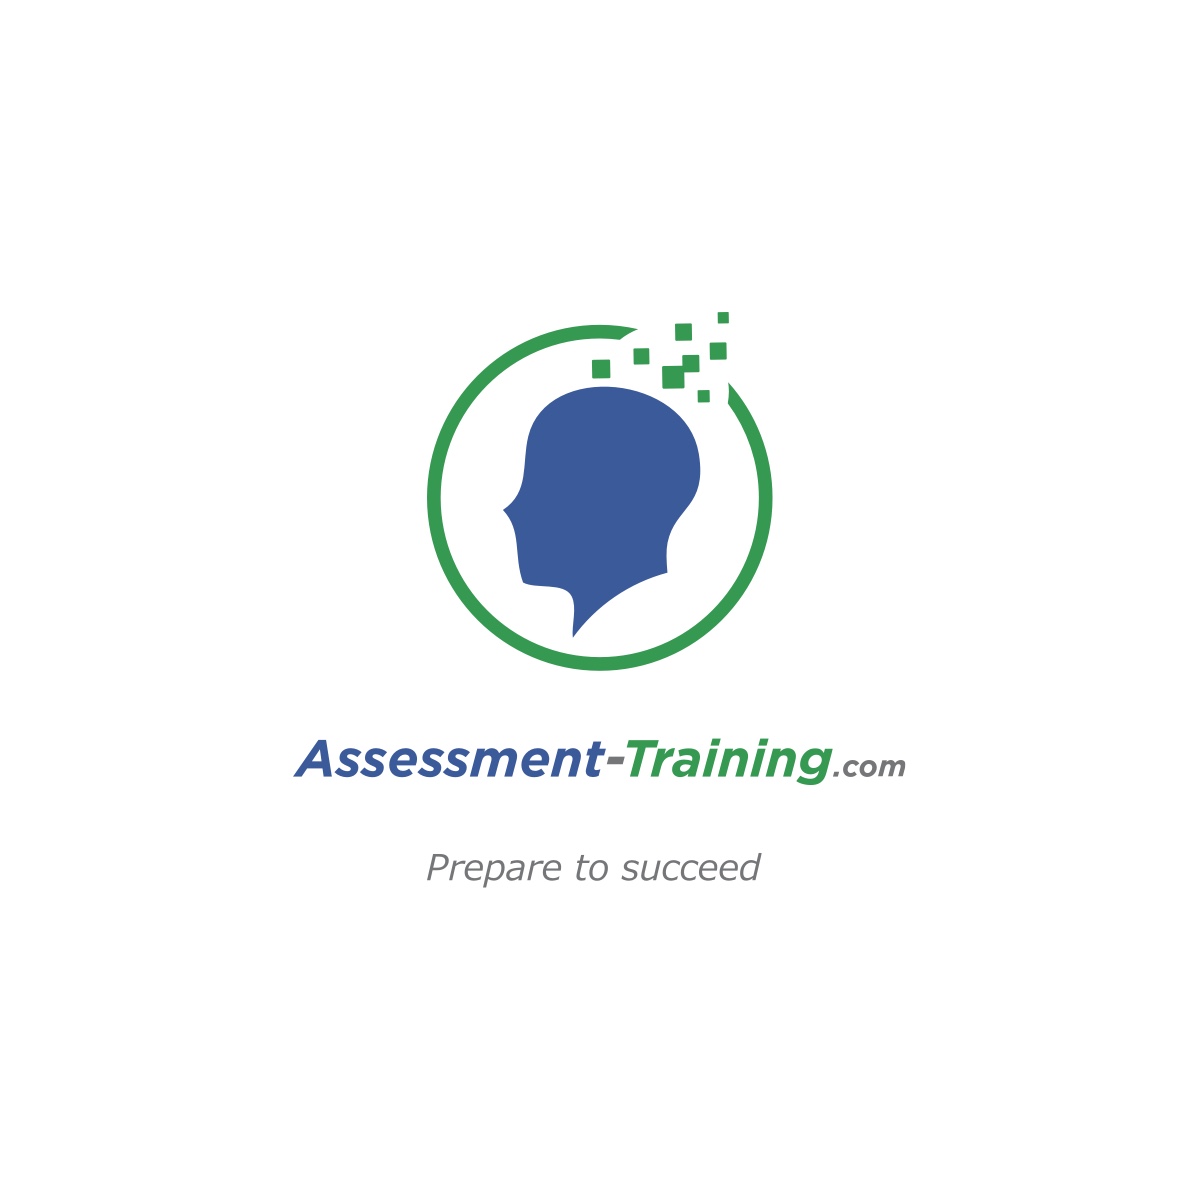 (c) Assessment-training.com